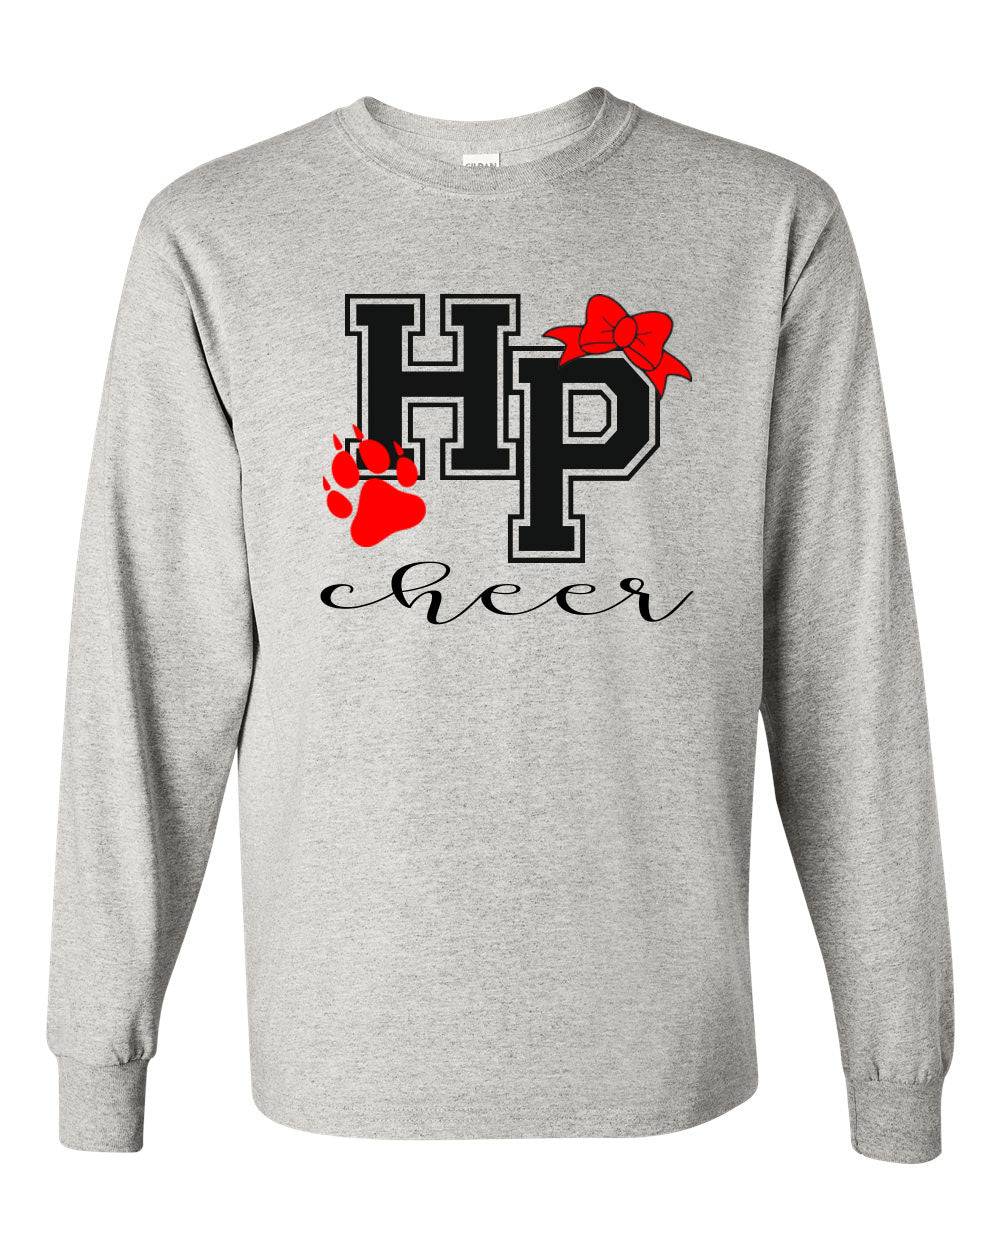 High Point Cheer Design 3 Long Sleeve Shirt